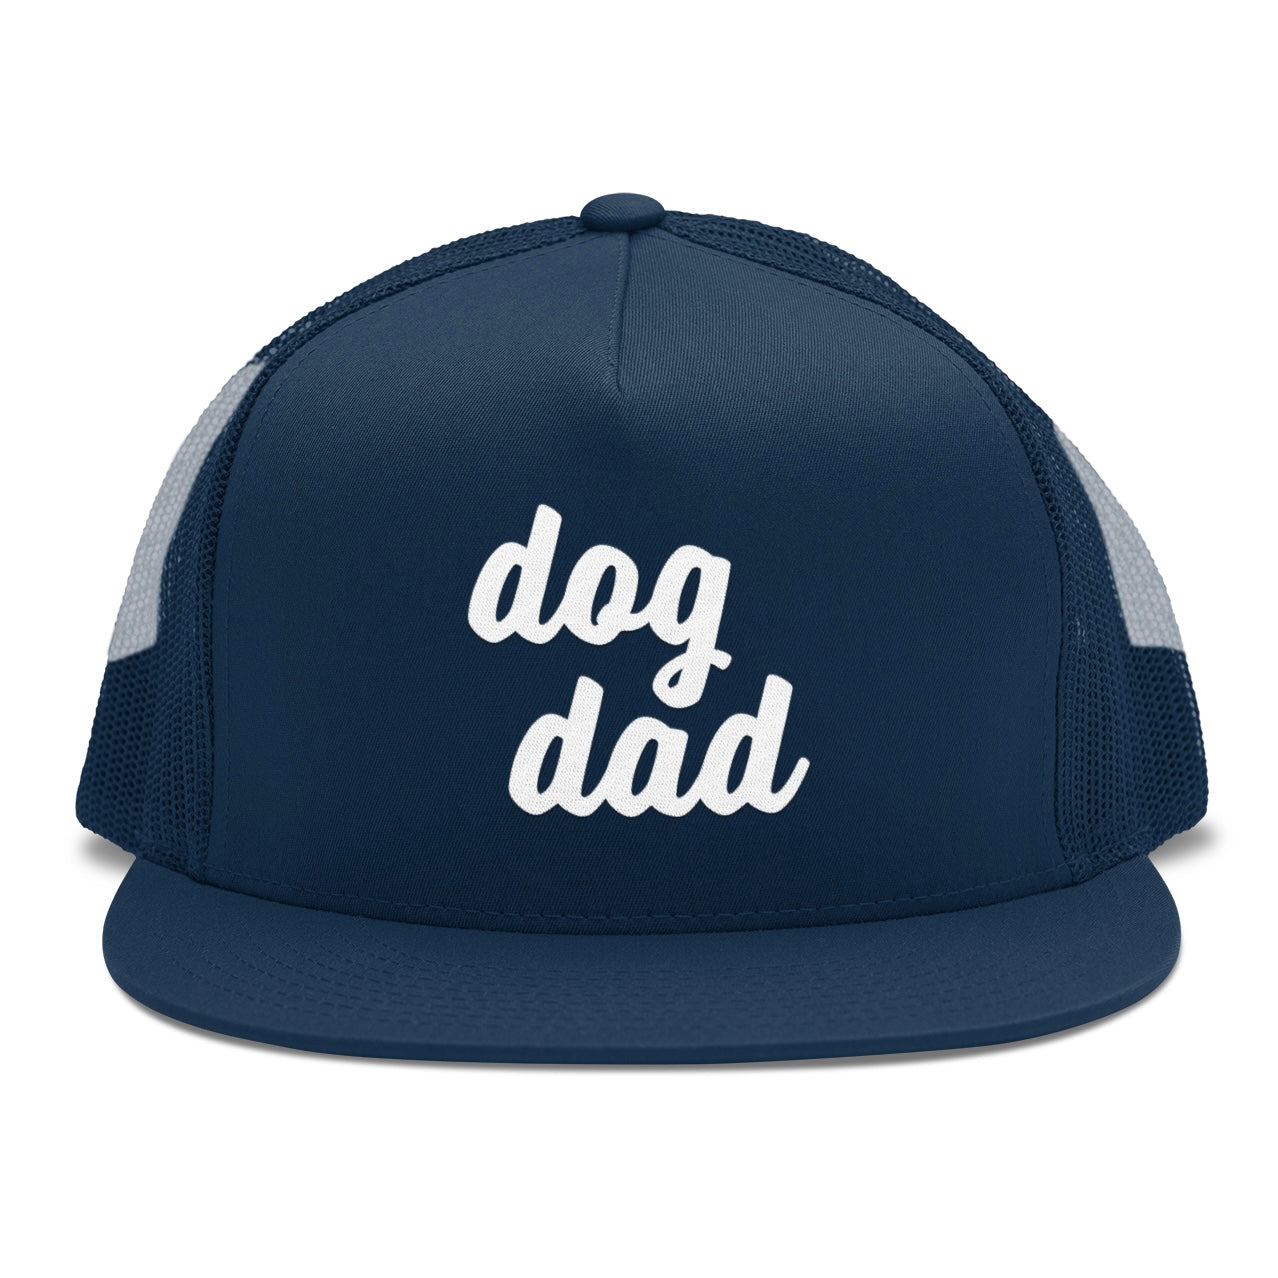 Big-Rig Trucker Hat - Dog Dad